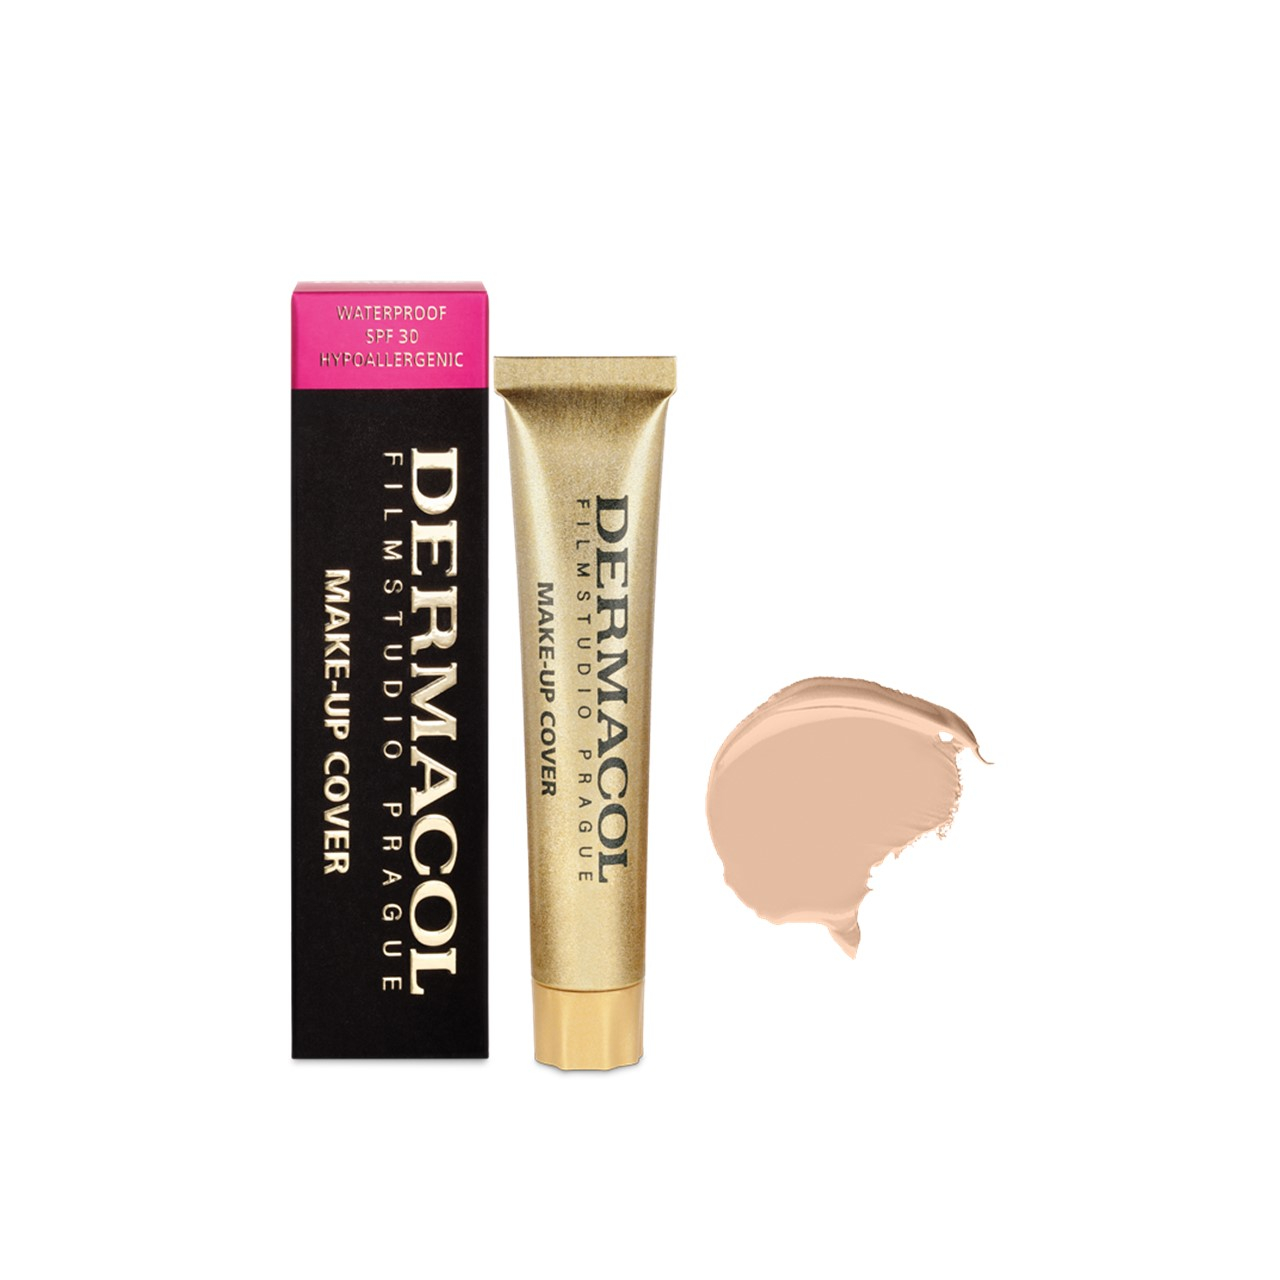 Dermacol Make-Up Cover Foundation SPF30 208 30g (1.06oz)